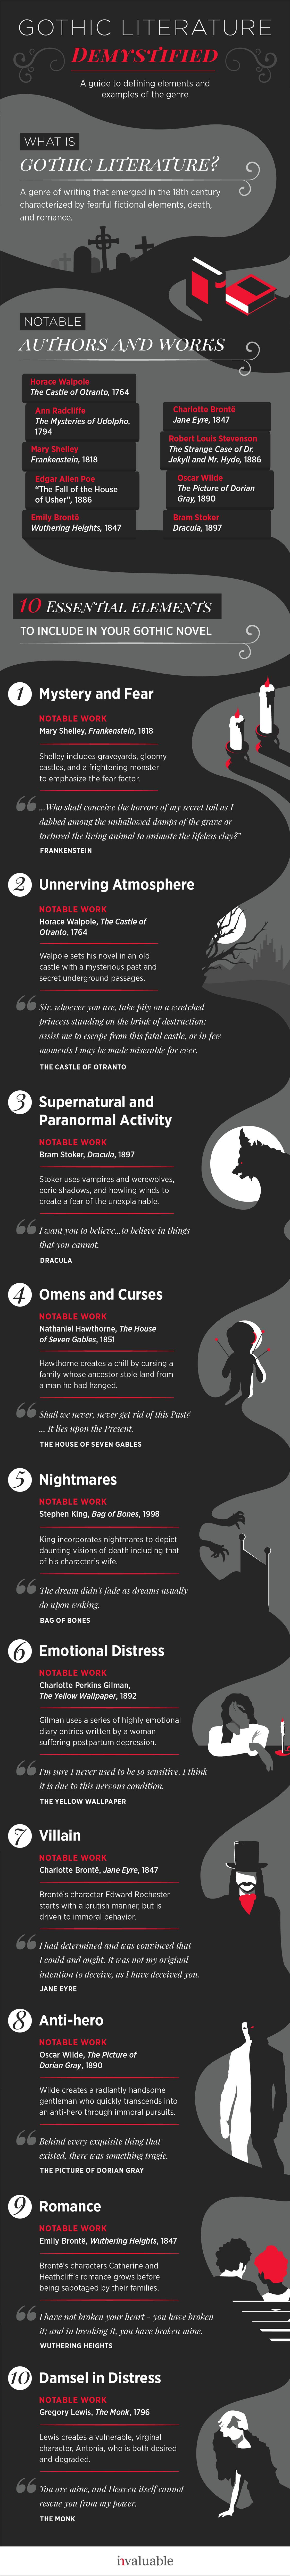 Gothic Literature Infographic